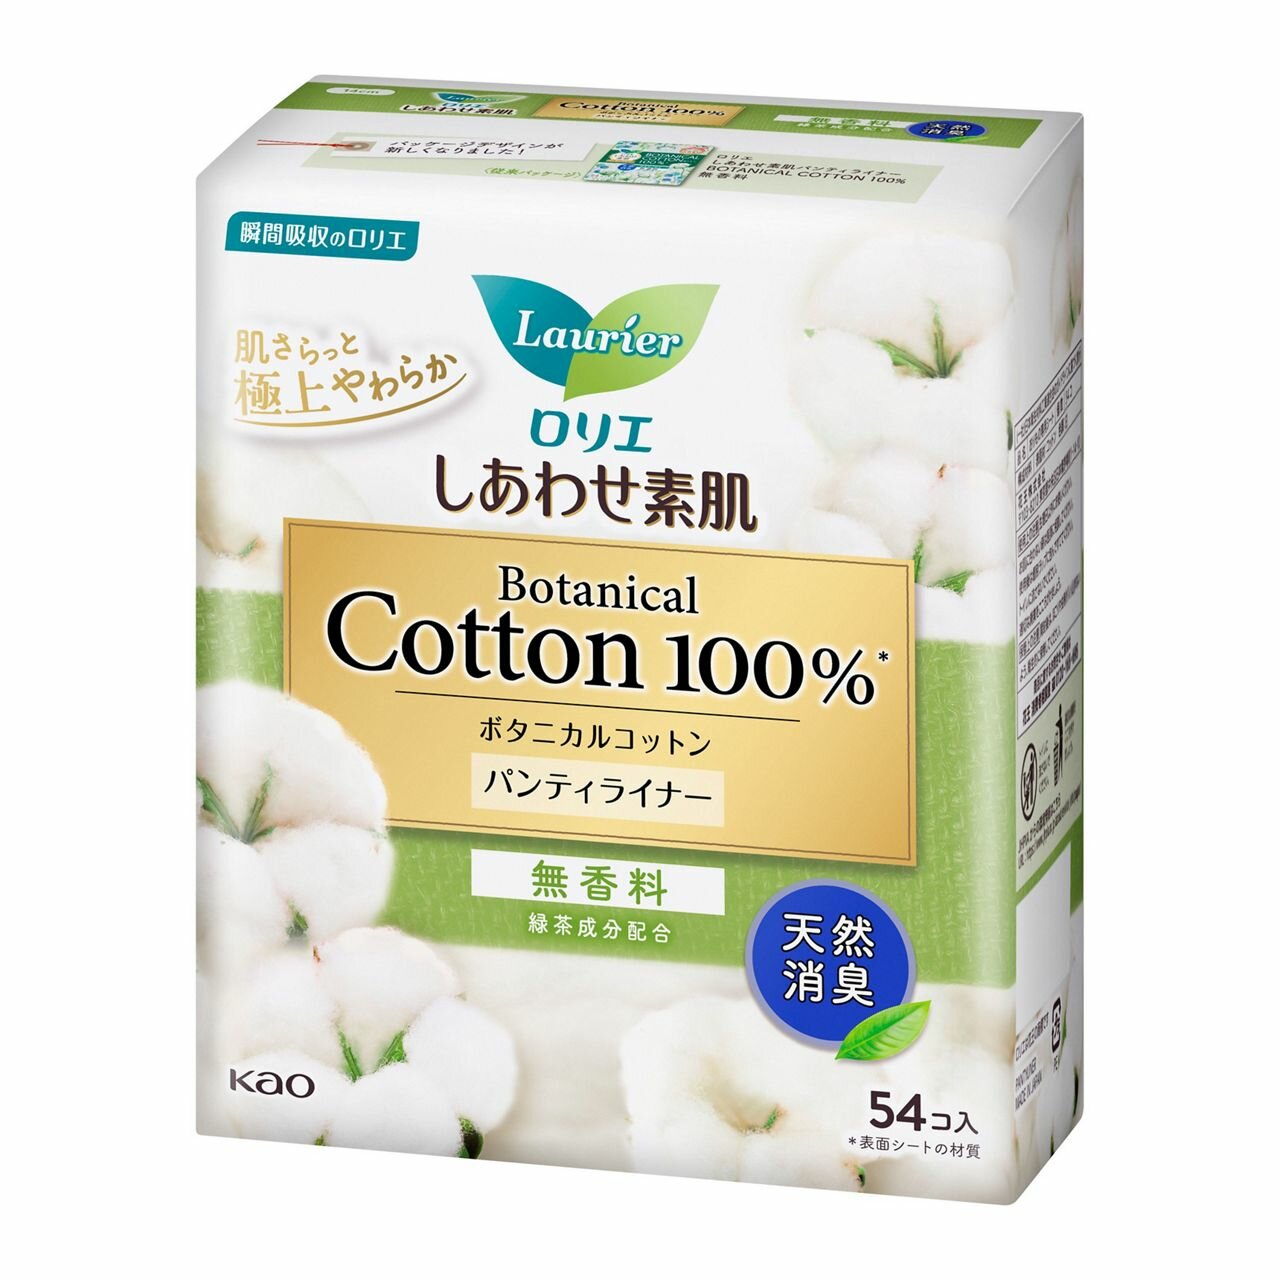 КАО Ежедневные гигиенические прокладки "Laurier", линия "Botanical Cotton", без аромата, 54шт.